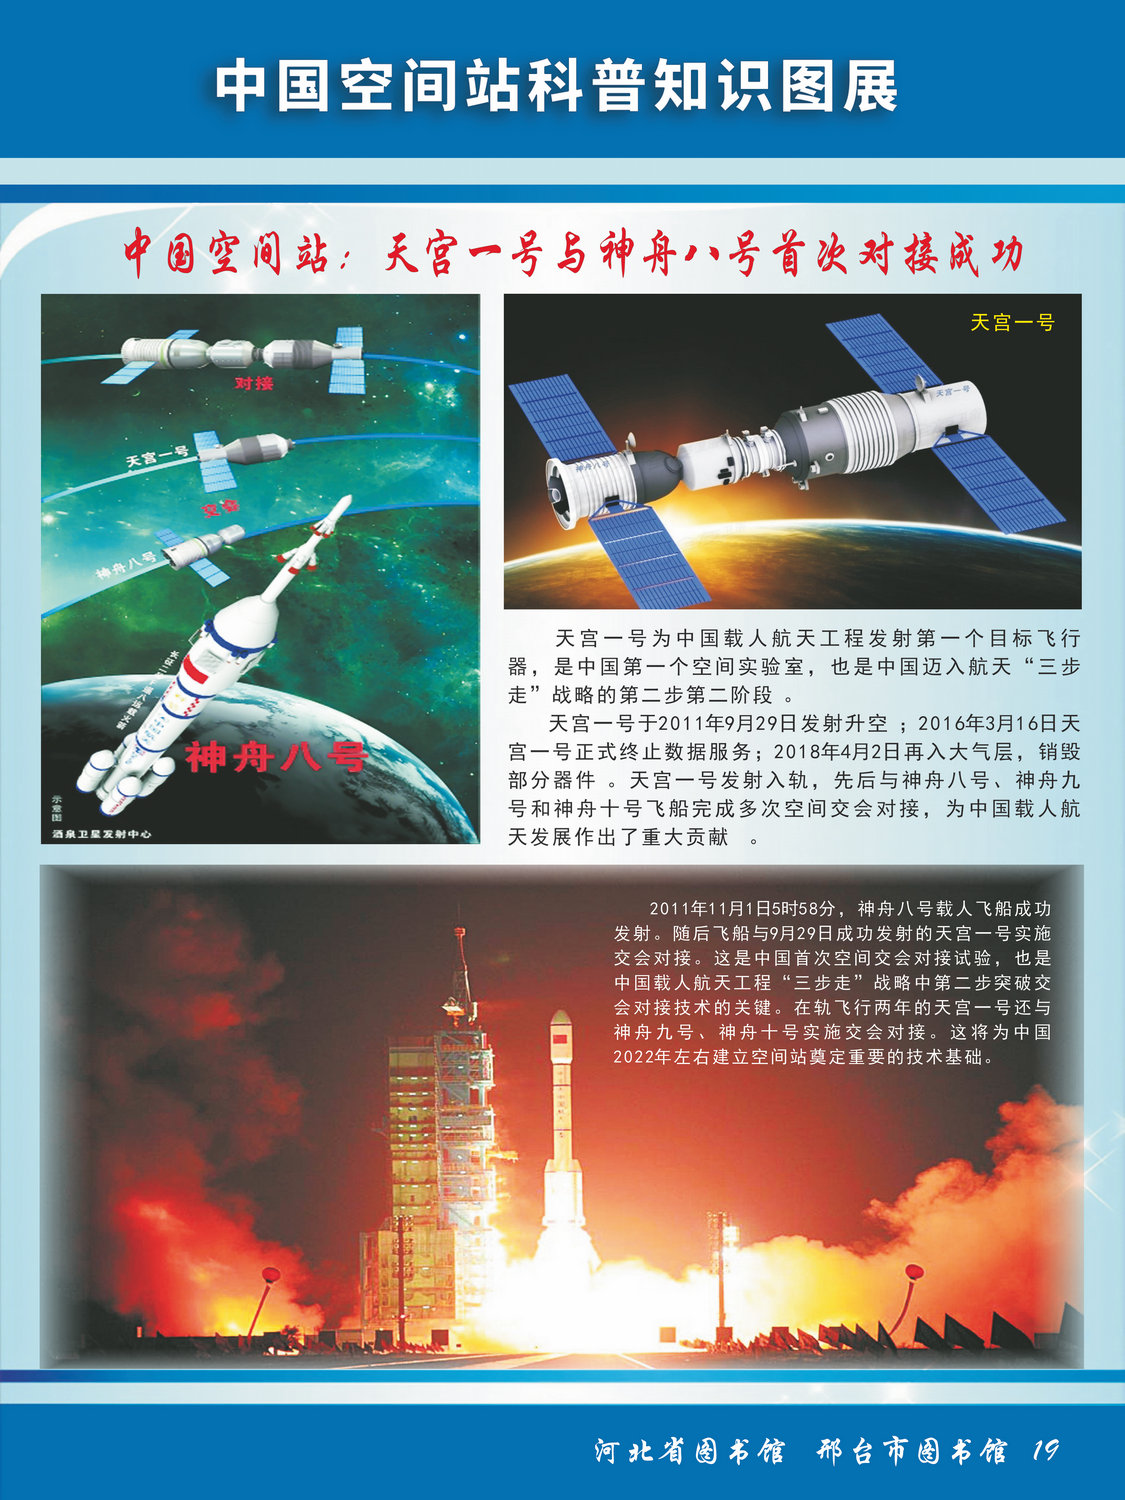 中国空间站科普知识图文展_图19